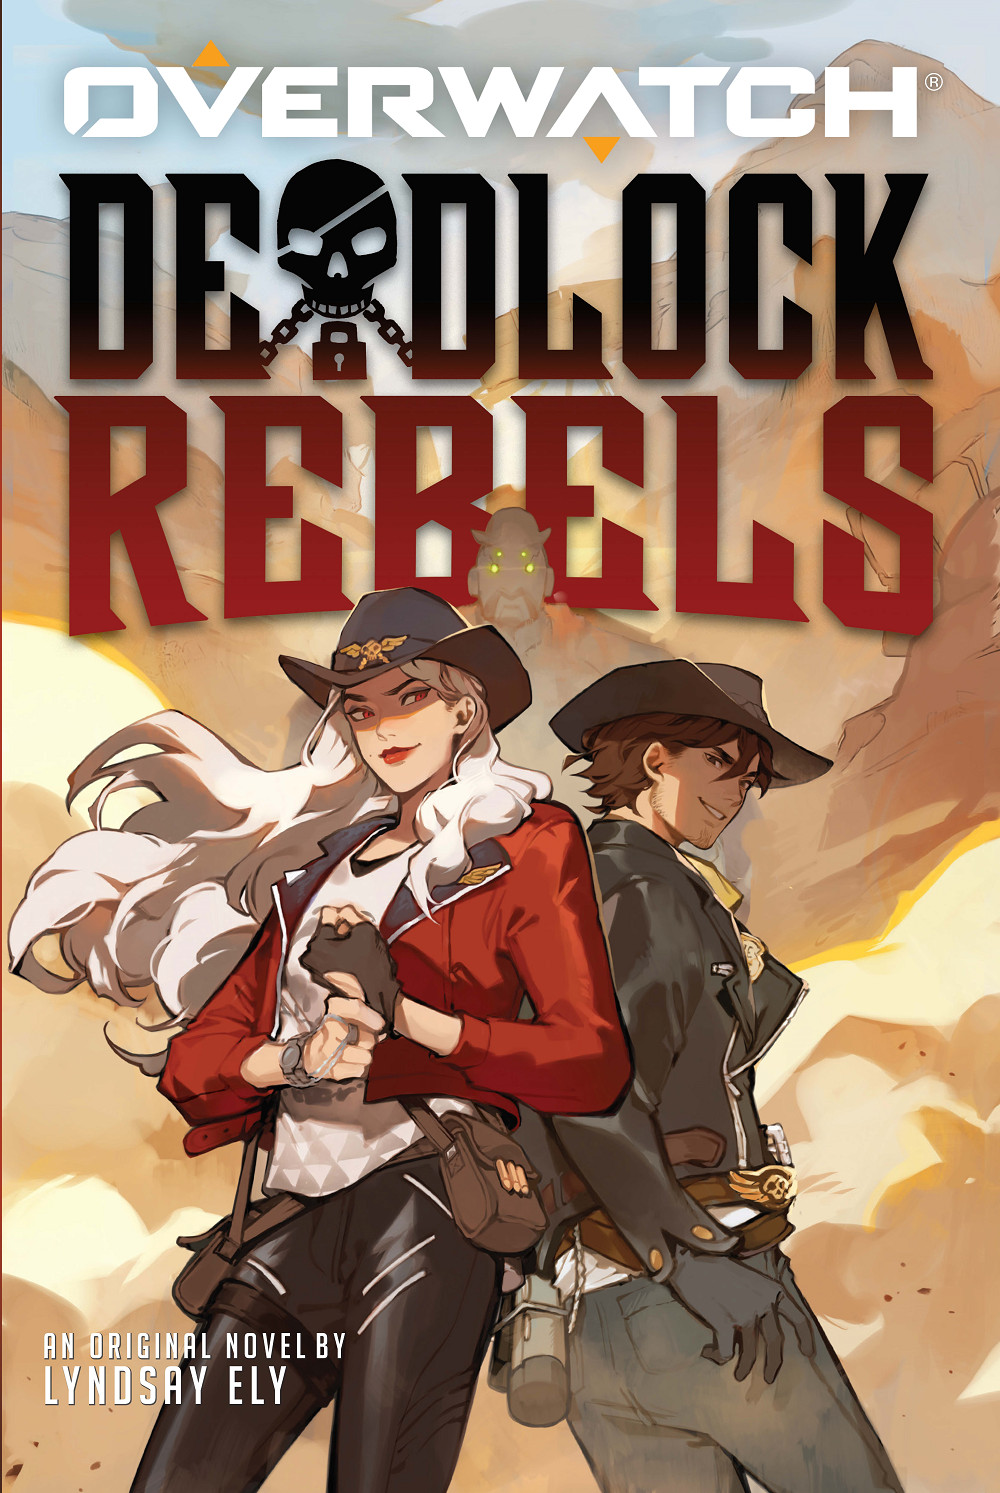 Cover art for Deadlock Rebels